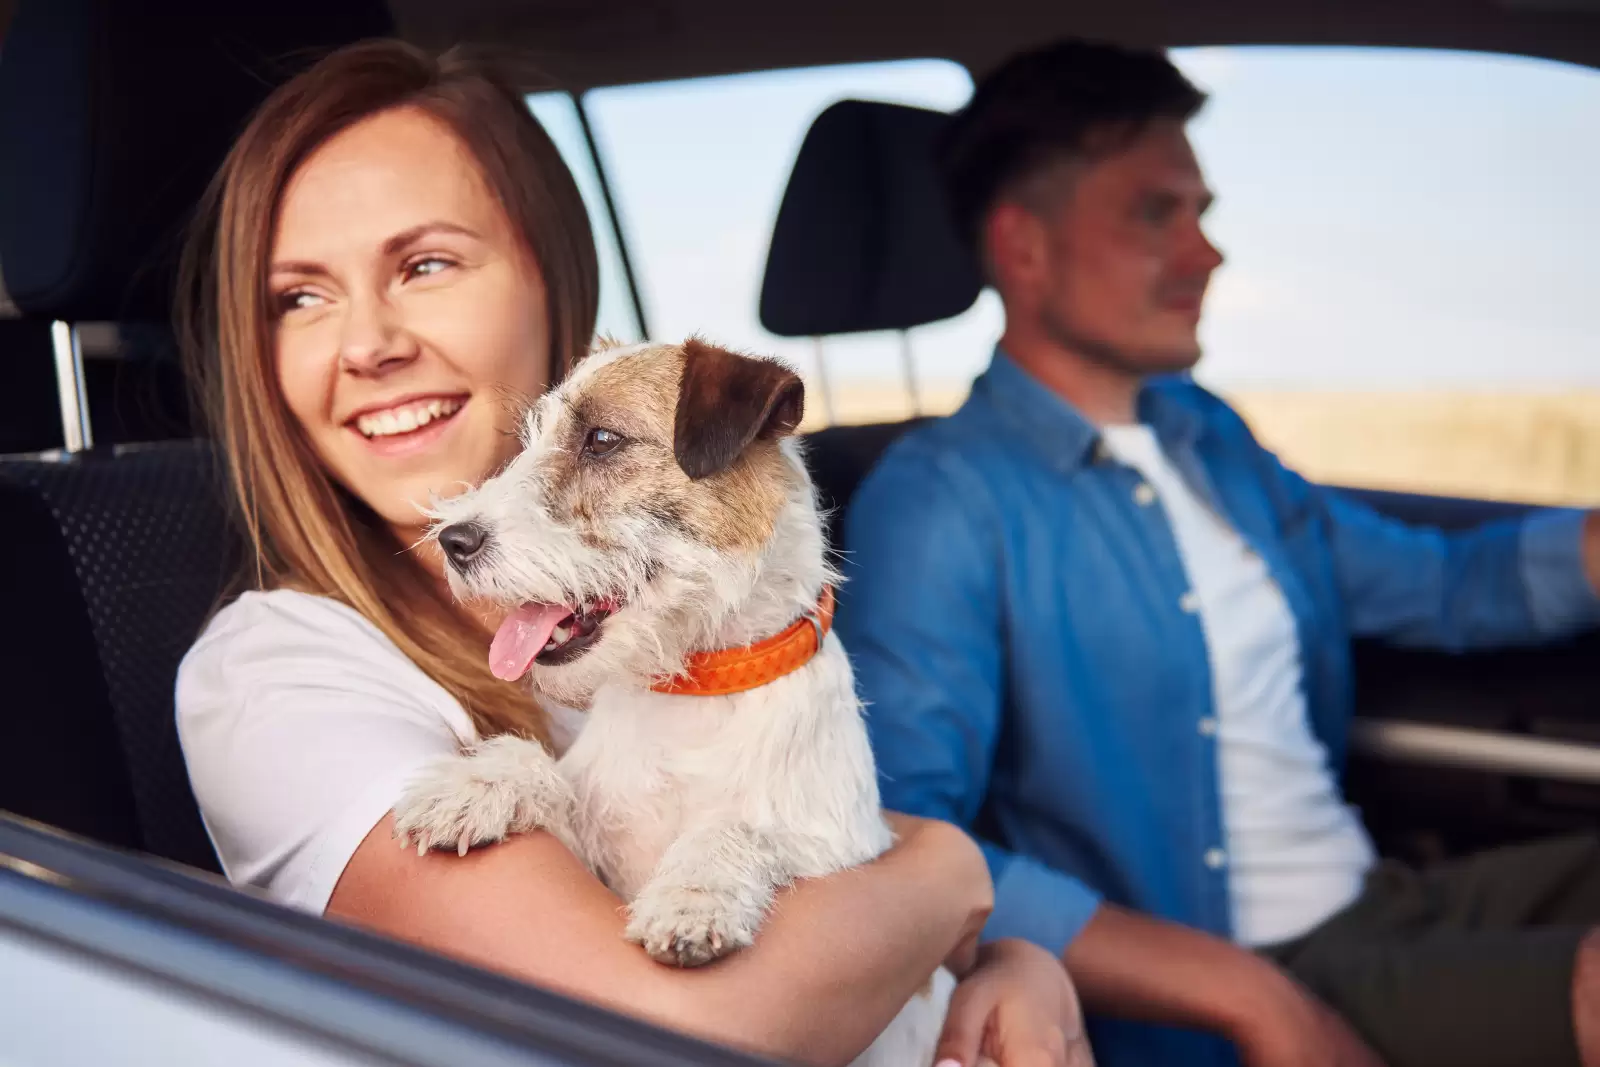 Seguro de Proteção Financeira Volkswagen: homem e mulher viajando de carro. Ele está dirigindo e ela está segurando um cachorro na janela.